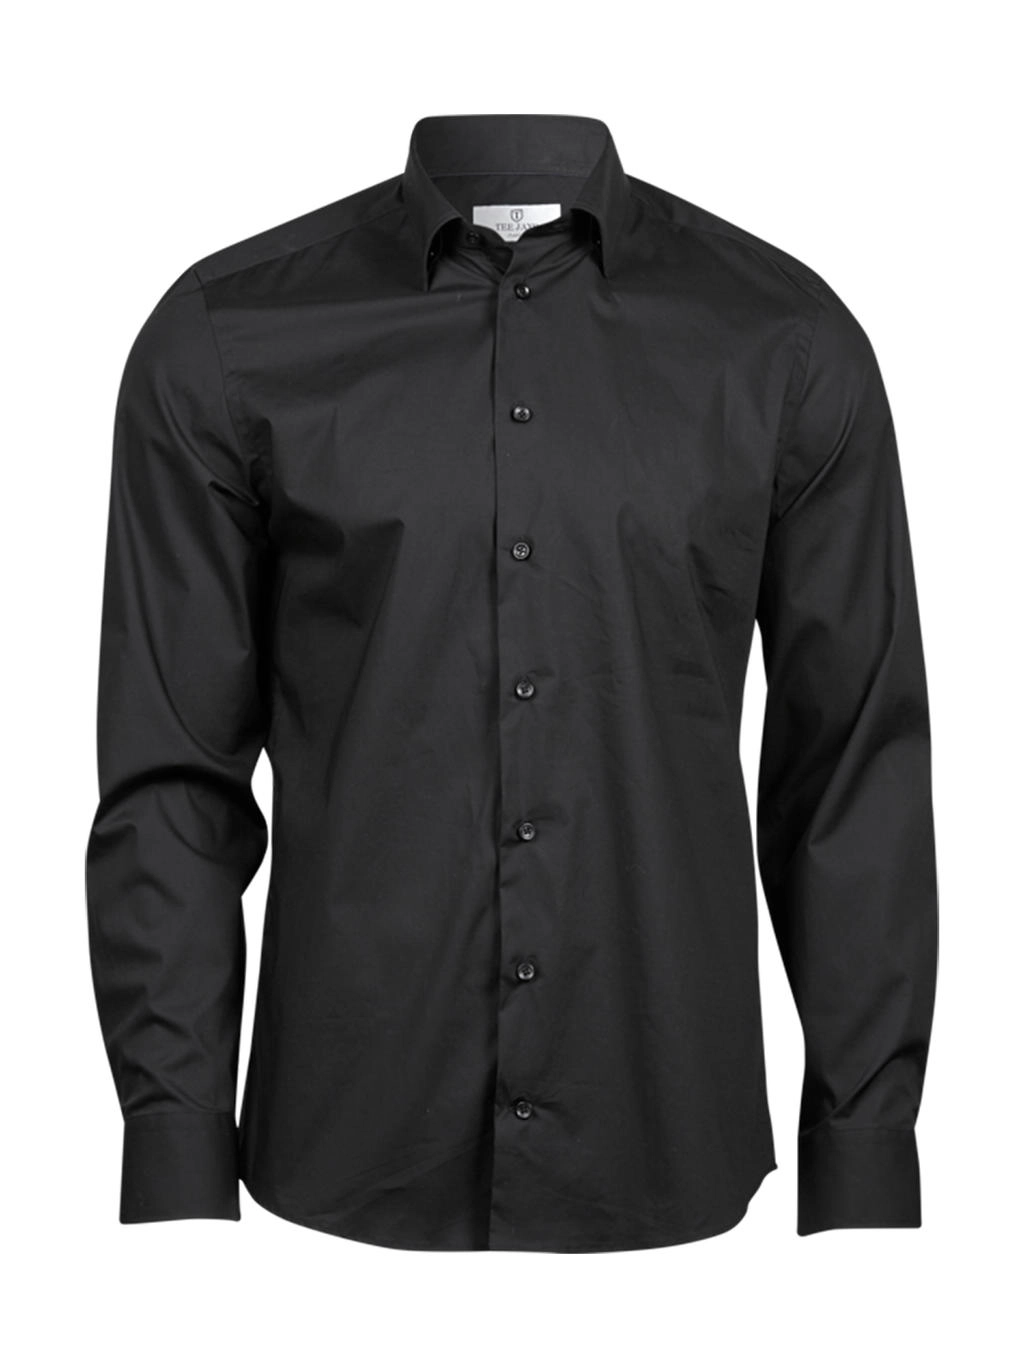 Stretch Luxury Shirt zum Besticken und Bedrucken in der Farbe Black mit Ihren Logo, Schriftzug oder Motiv.